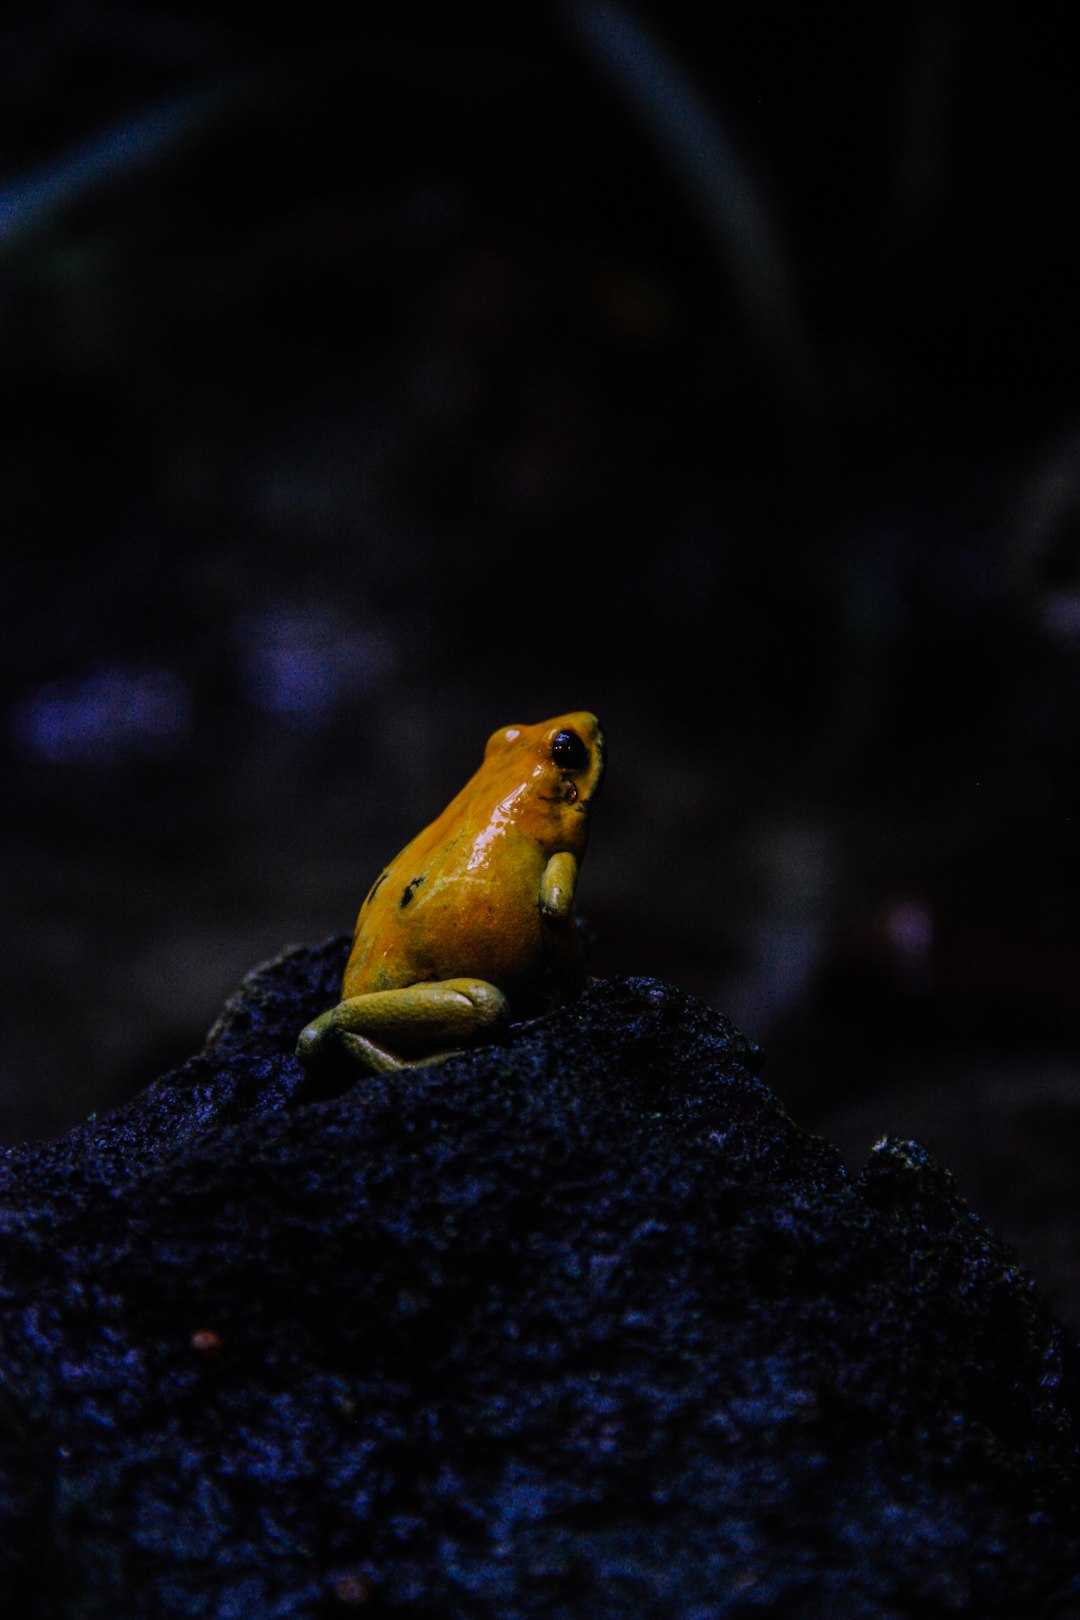 yellow frog on stone